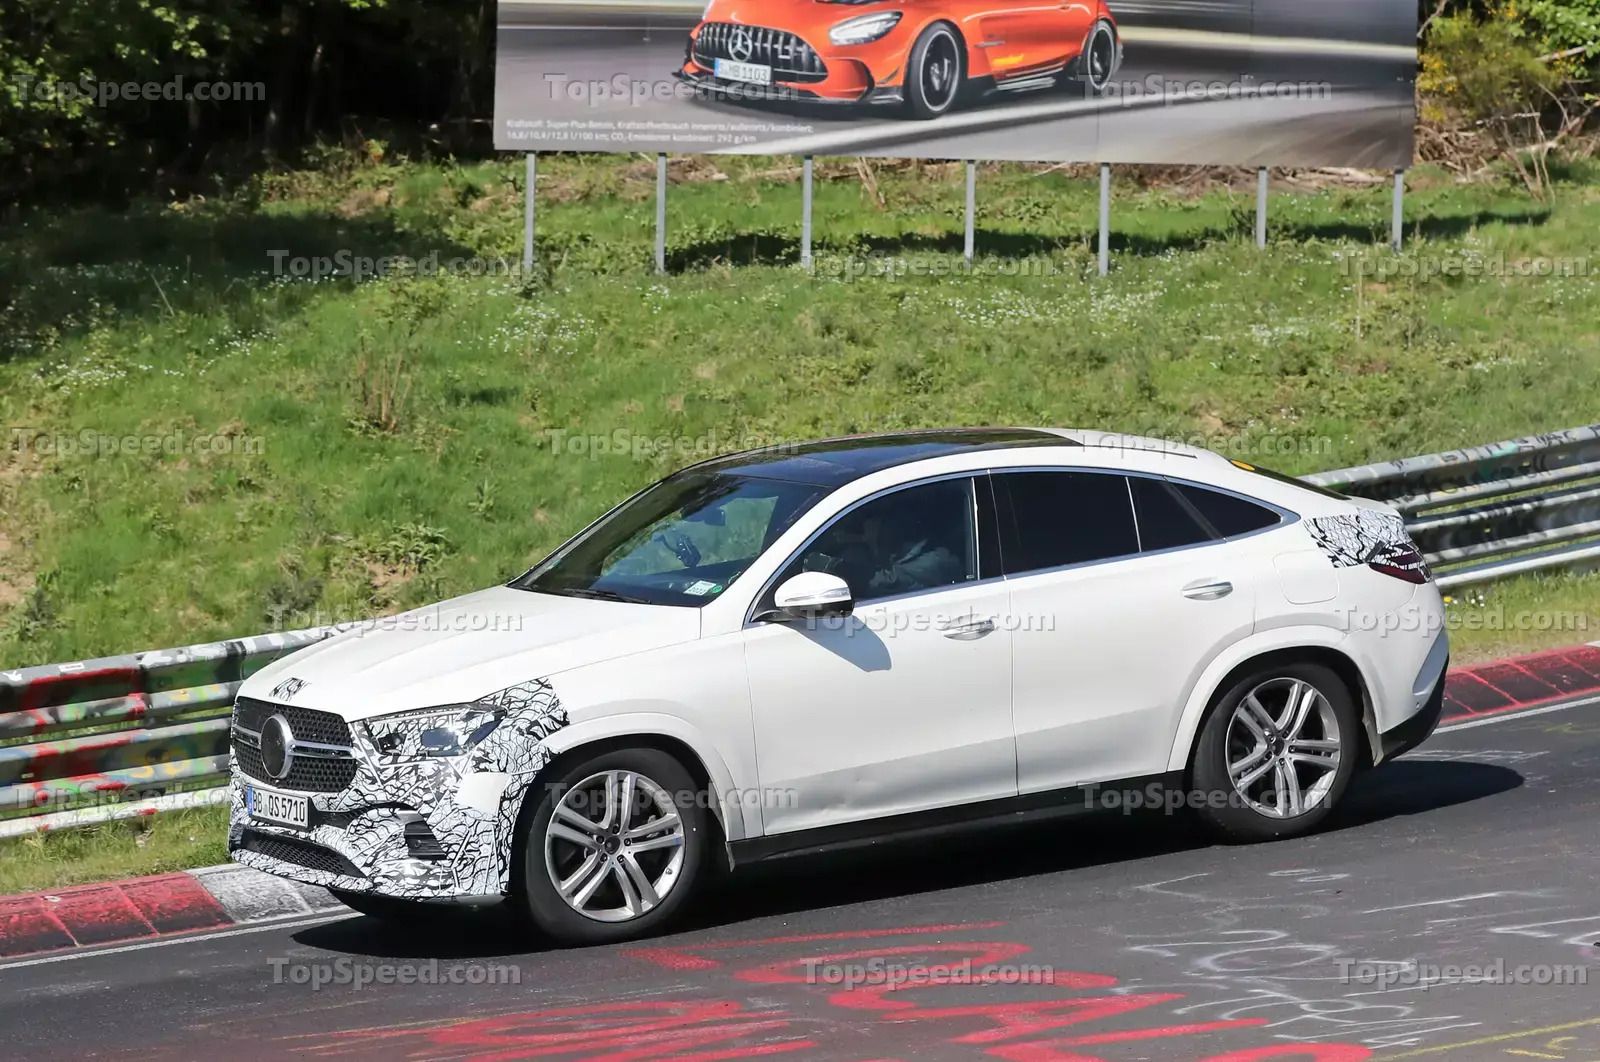 2023 Mercedes GLE Coupe Spy Shots Front Quarter View